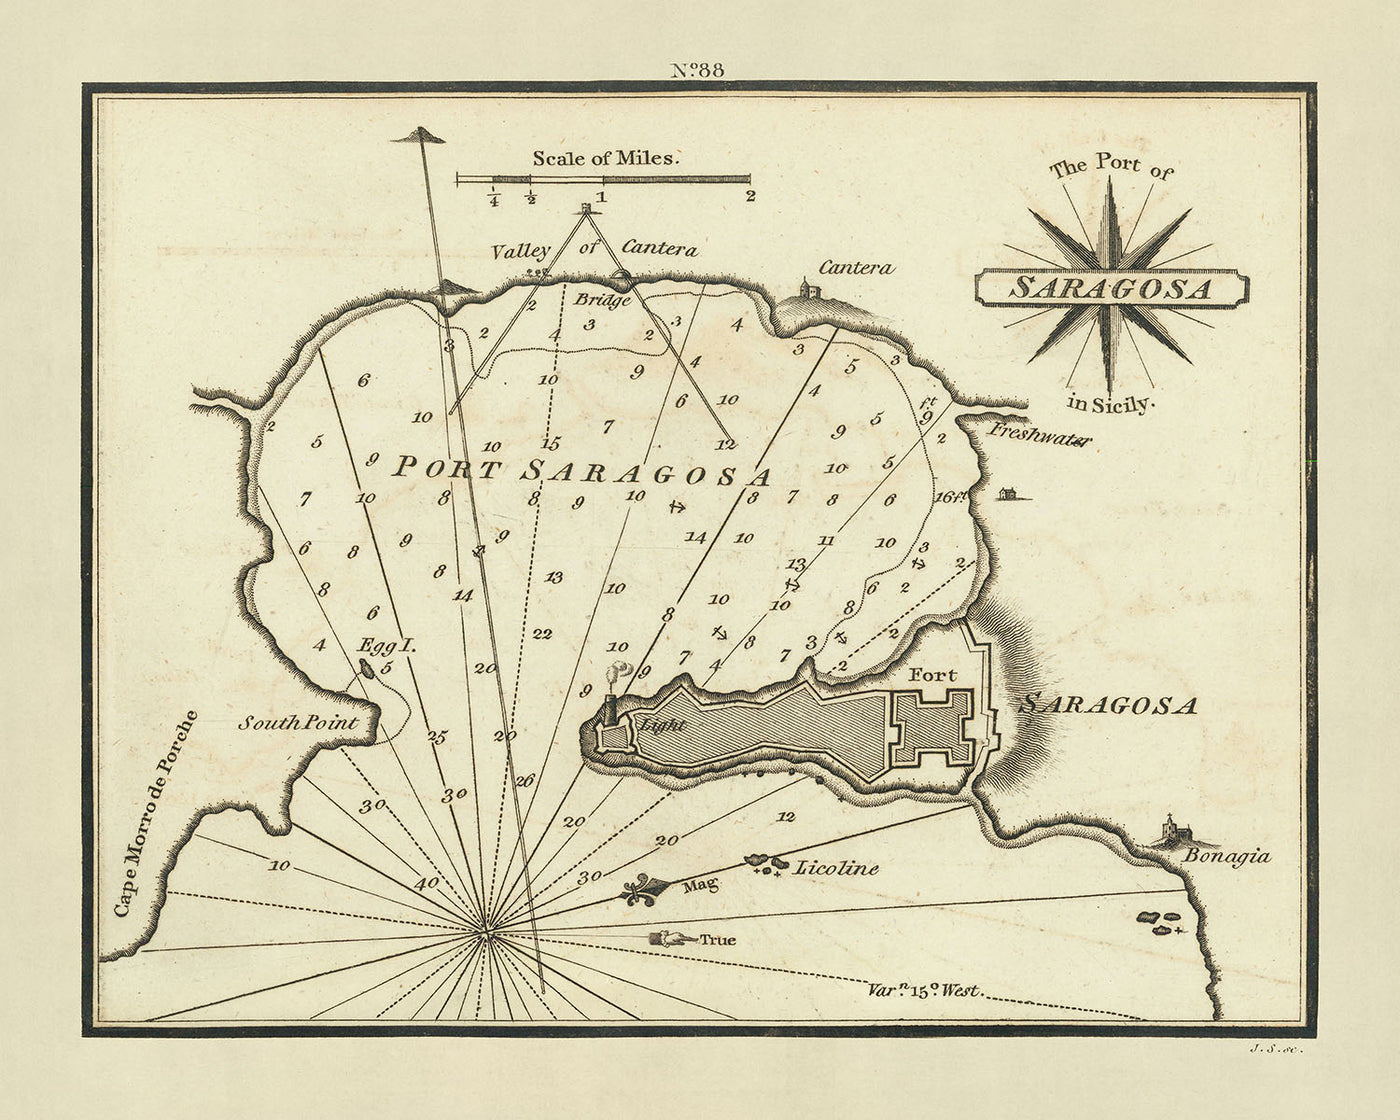 Carte nautique du vieux port de Saragosse par Heather, 1802 : fortifications, phare, sondages